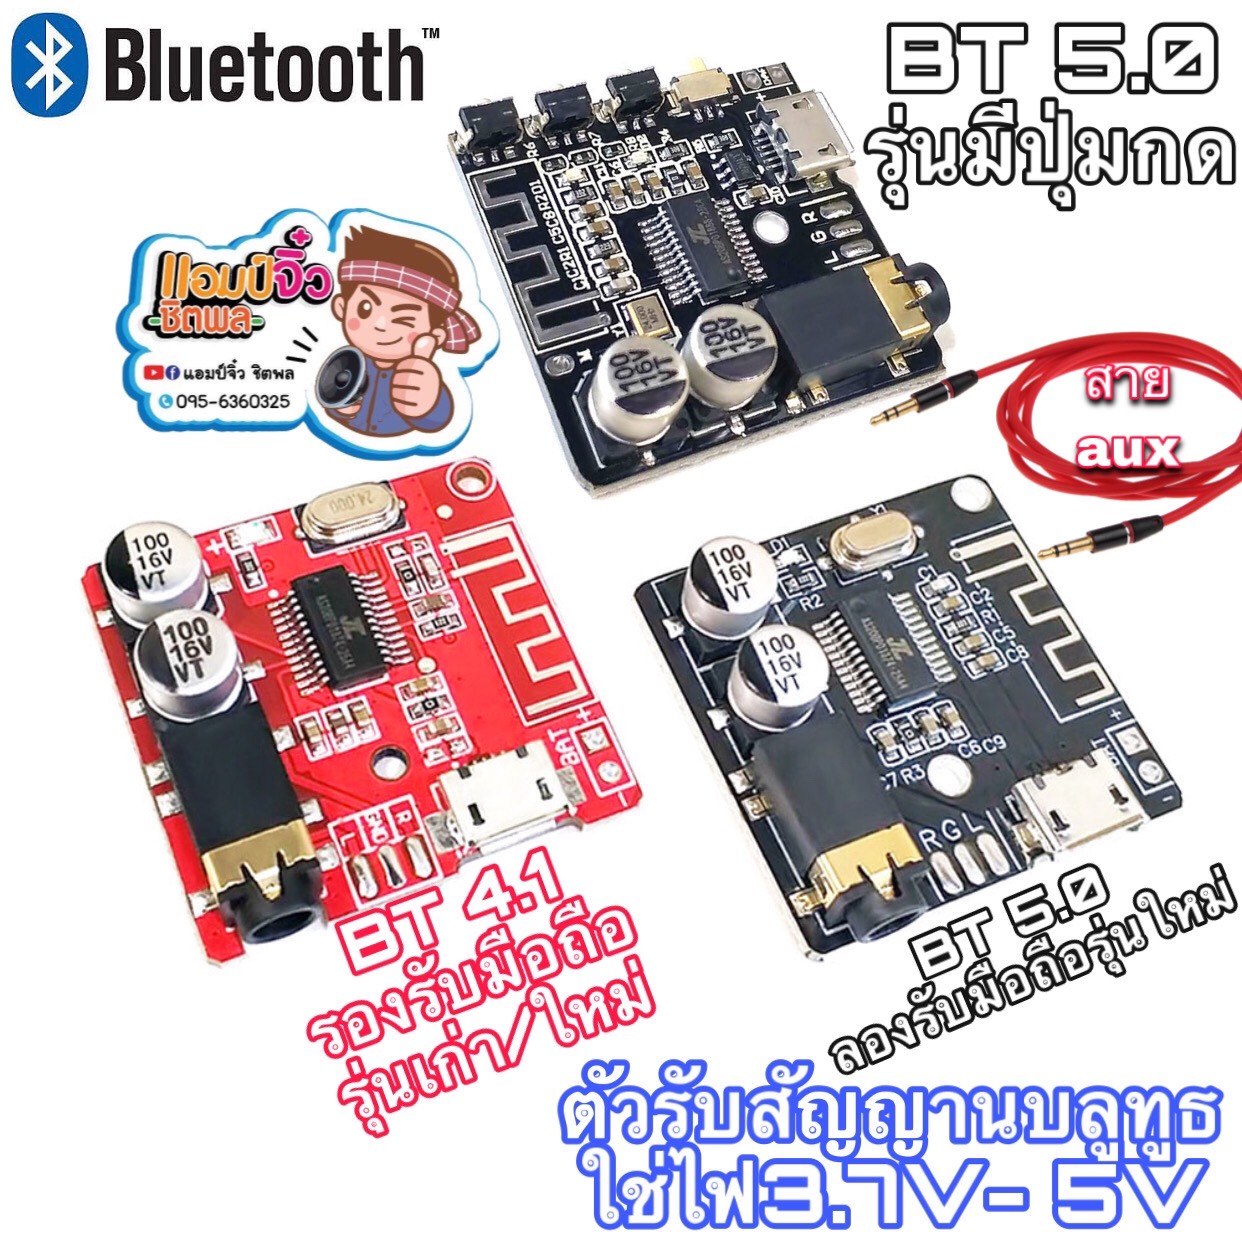 บลูทูธ 5.0 และ บลูทูธ 4.1 ตัวรับสัญญาณบลูทูธพร้อมใช้งาน Bluetooth 5.0 และ Bluetooth 4.1